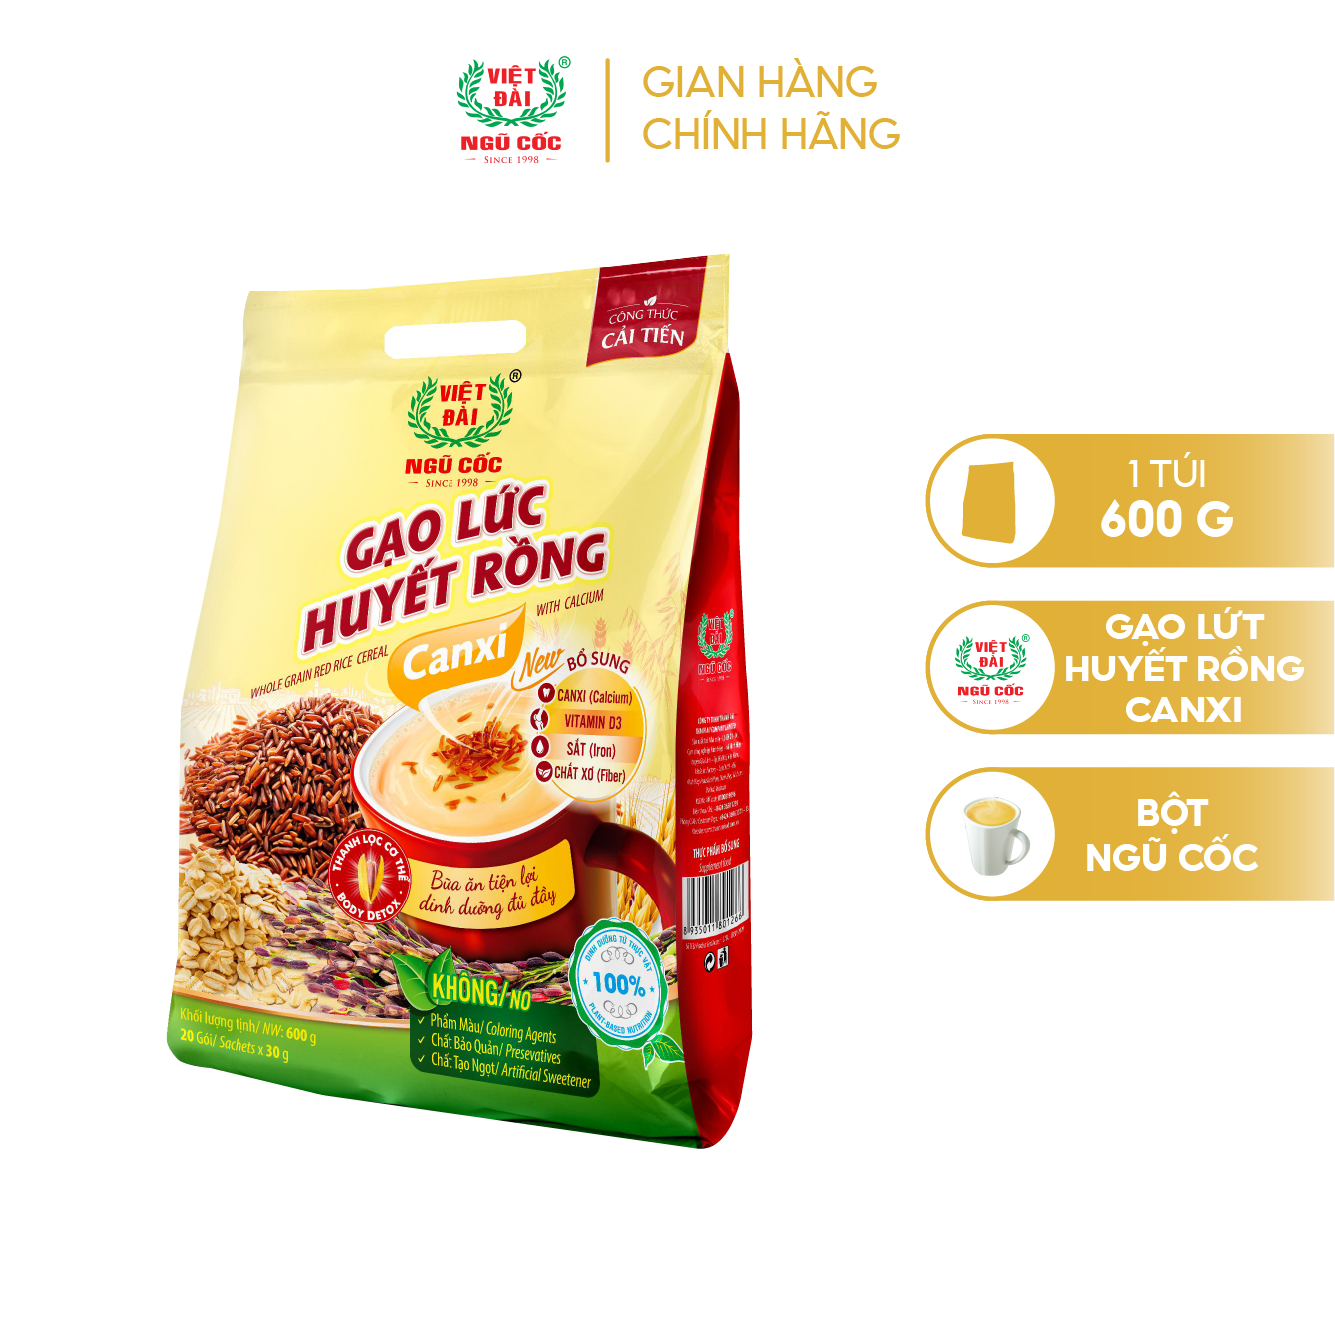 Bột ngũ cốc Gạo lức huyết rồng Canxi Việt Đài túi 600g